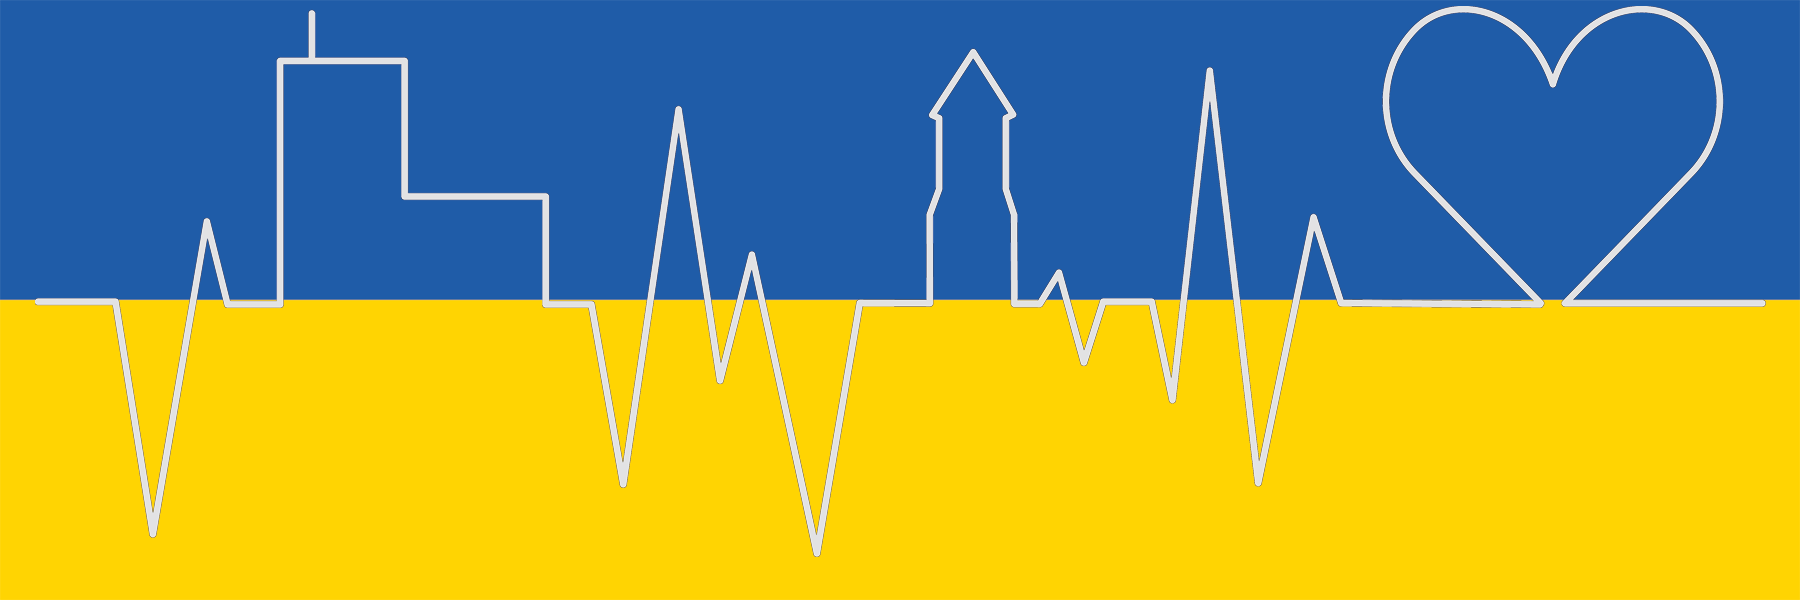 ukraine-hilfe_banner.png